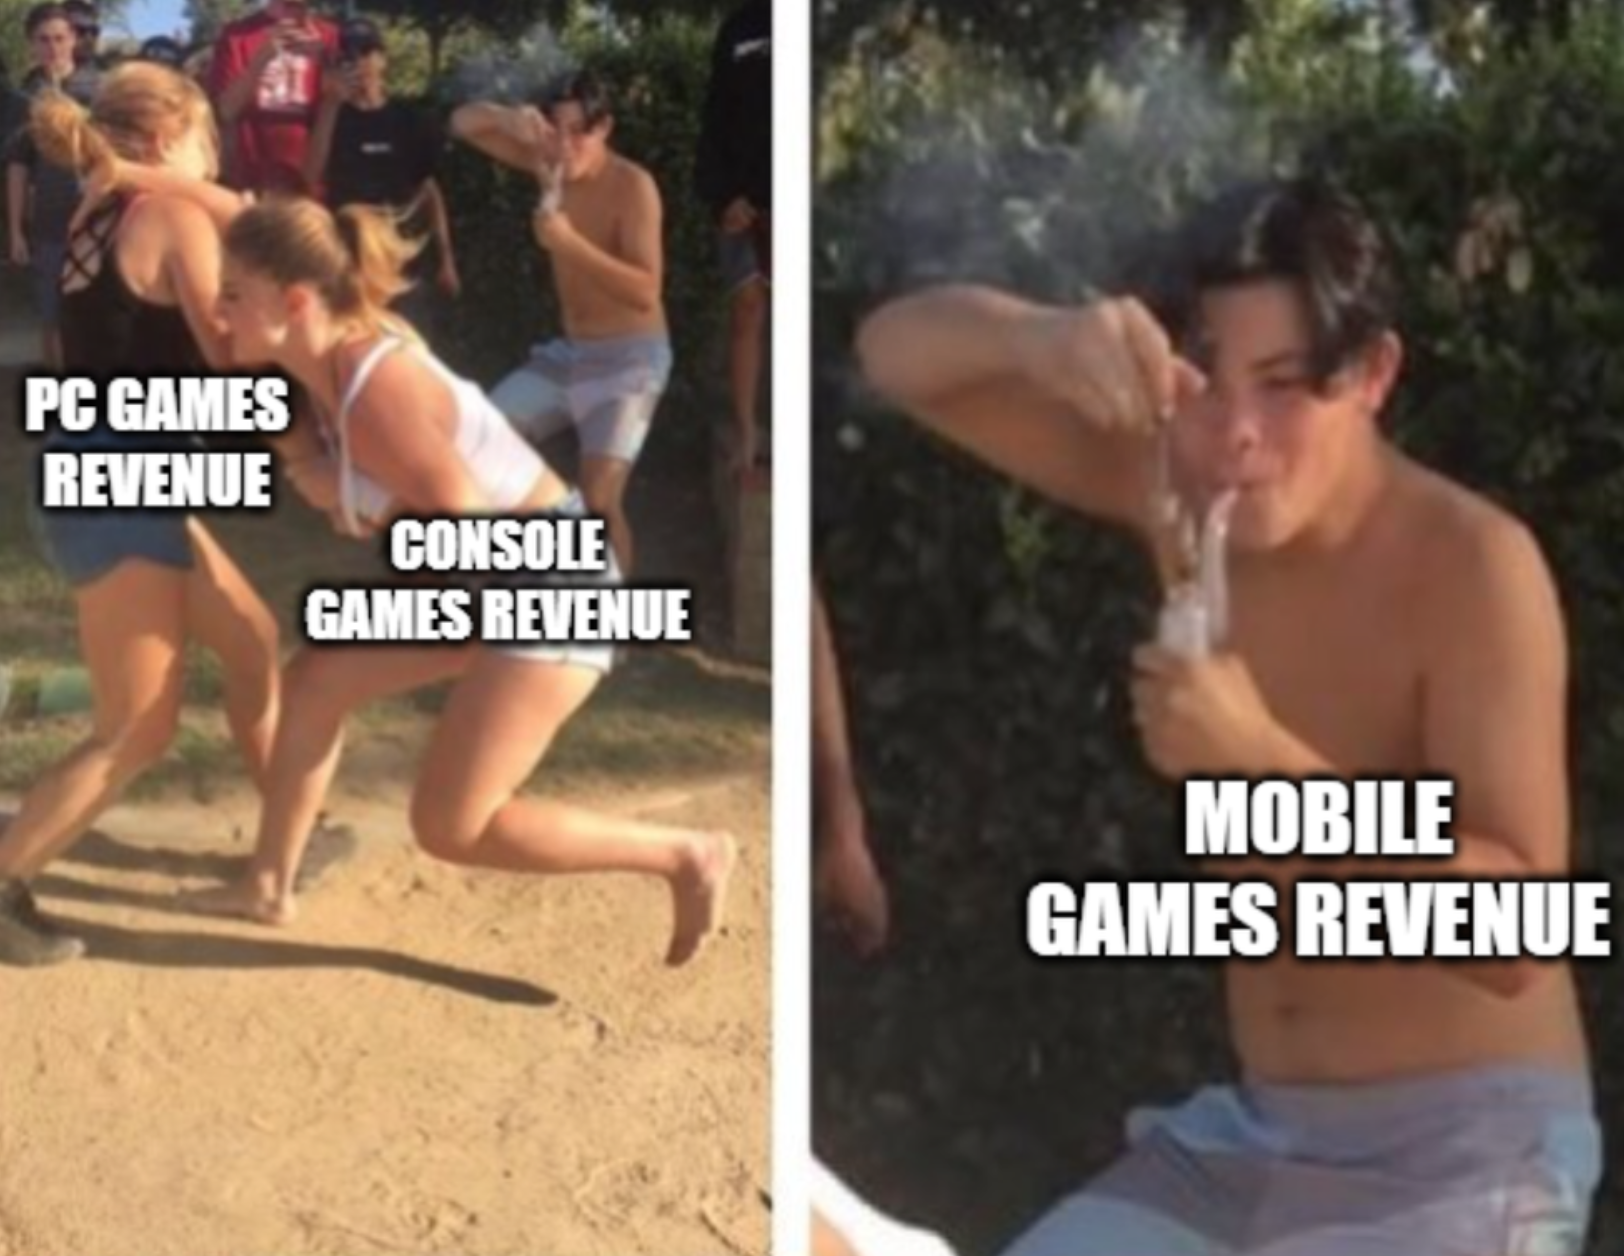 funny gaming memes - dabbing dude meme - Pc Games Revenue Console Games Revenue Mobile Games Revenue